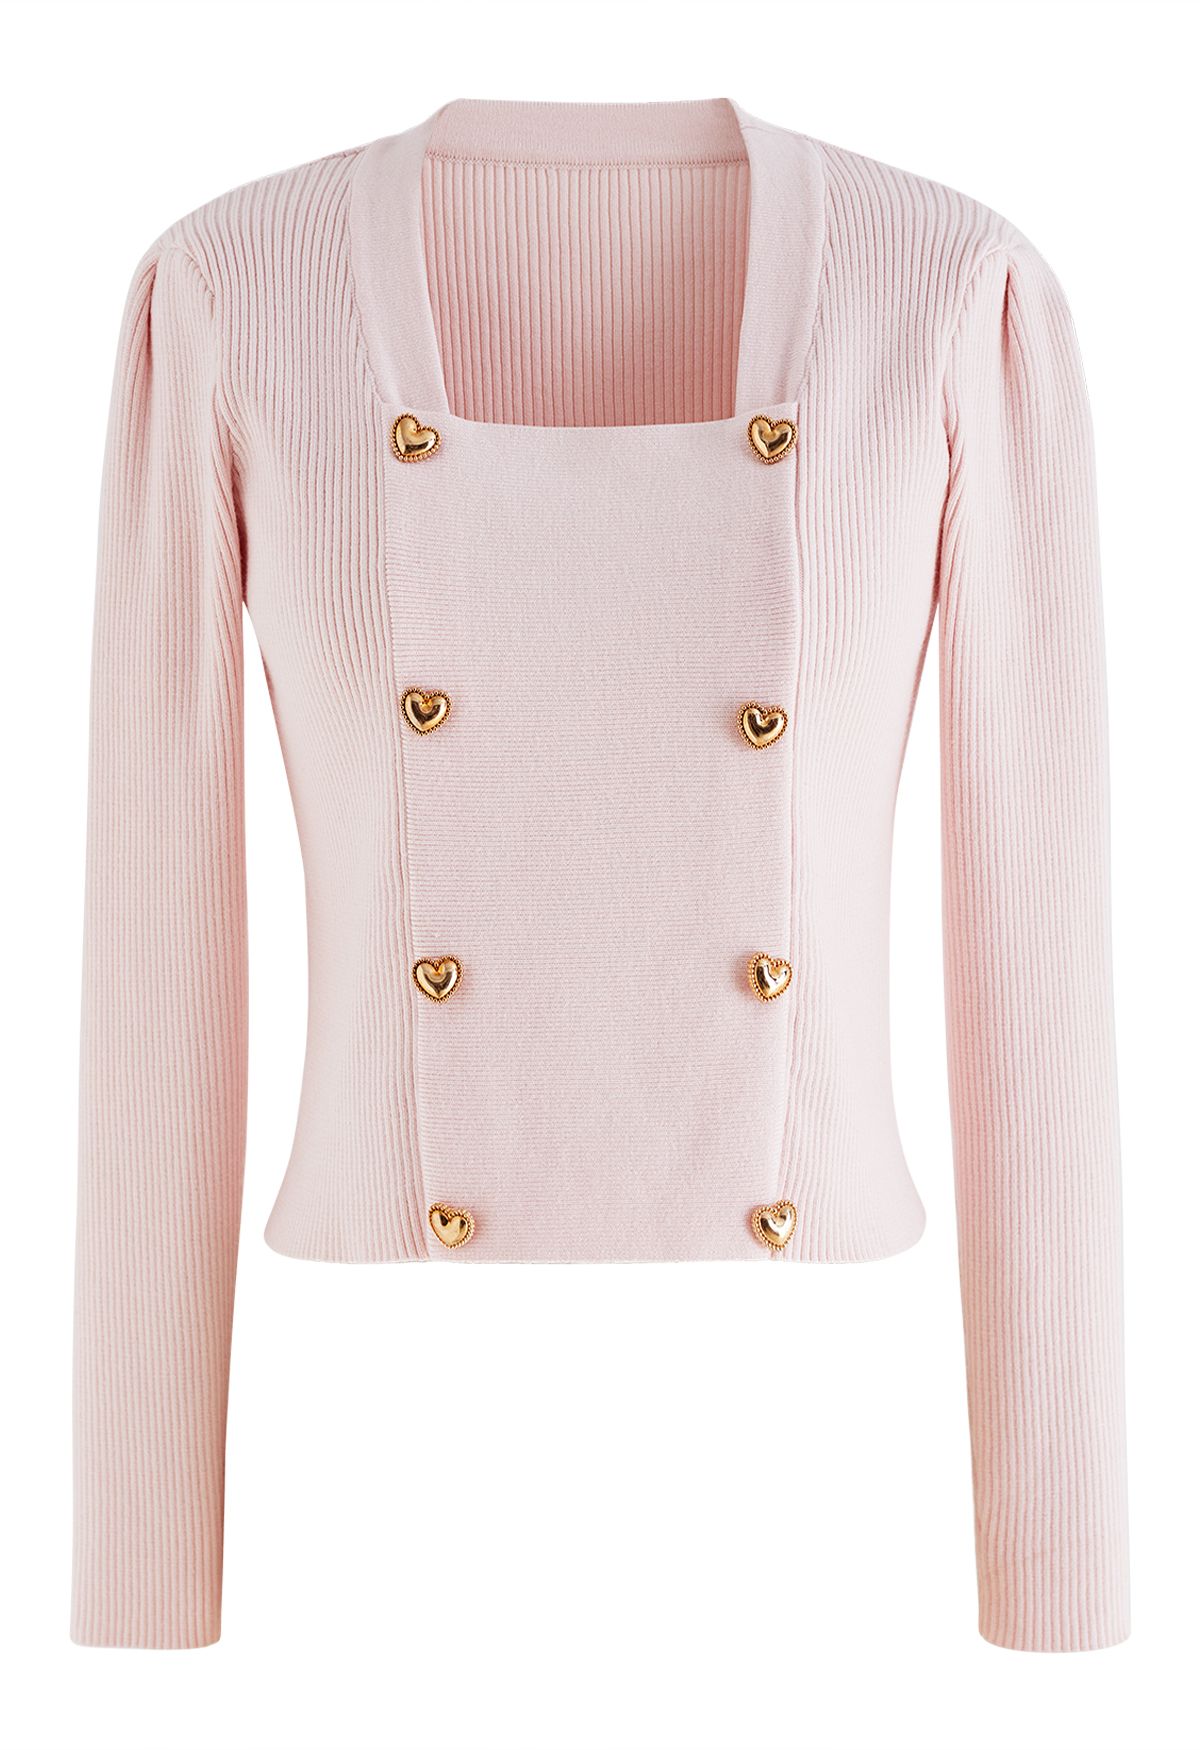 Blusa de tricô com botões em formato de coração rosa claro